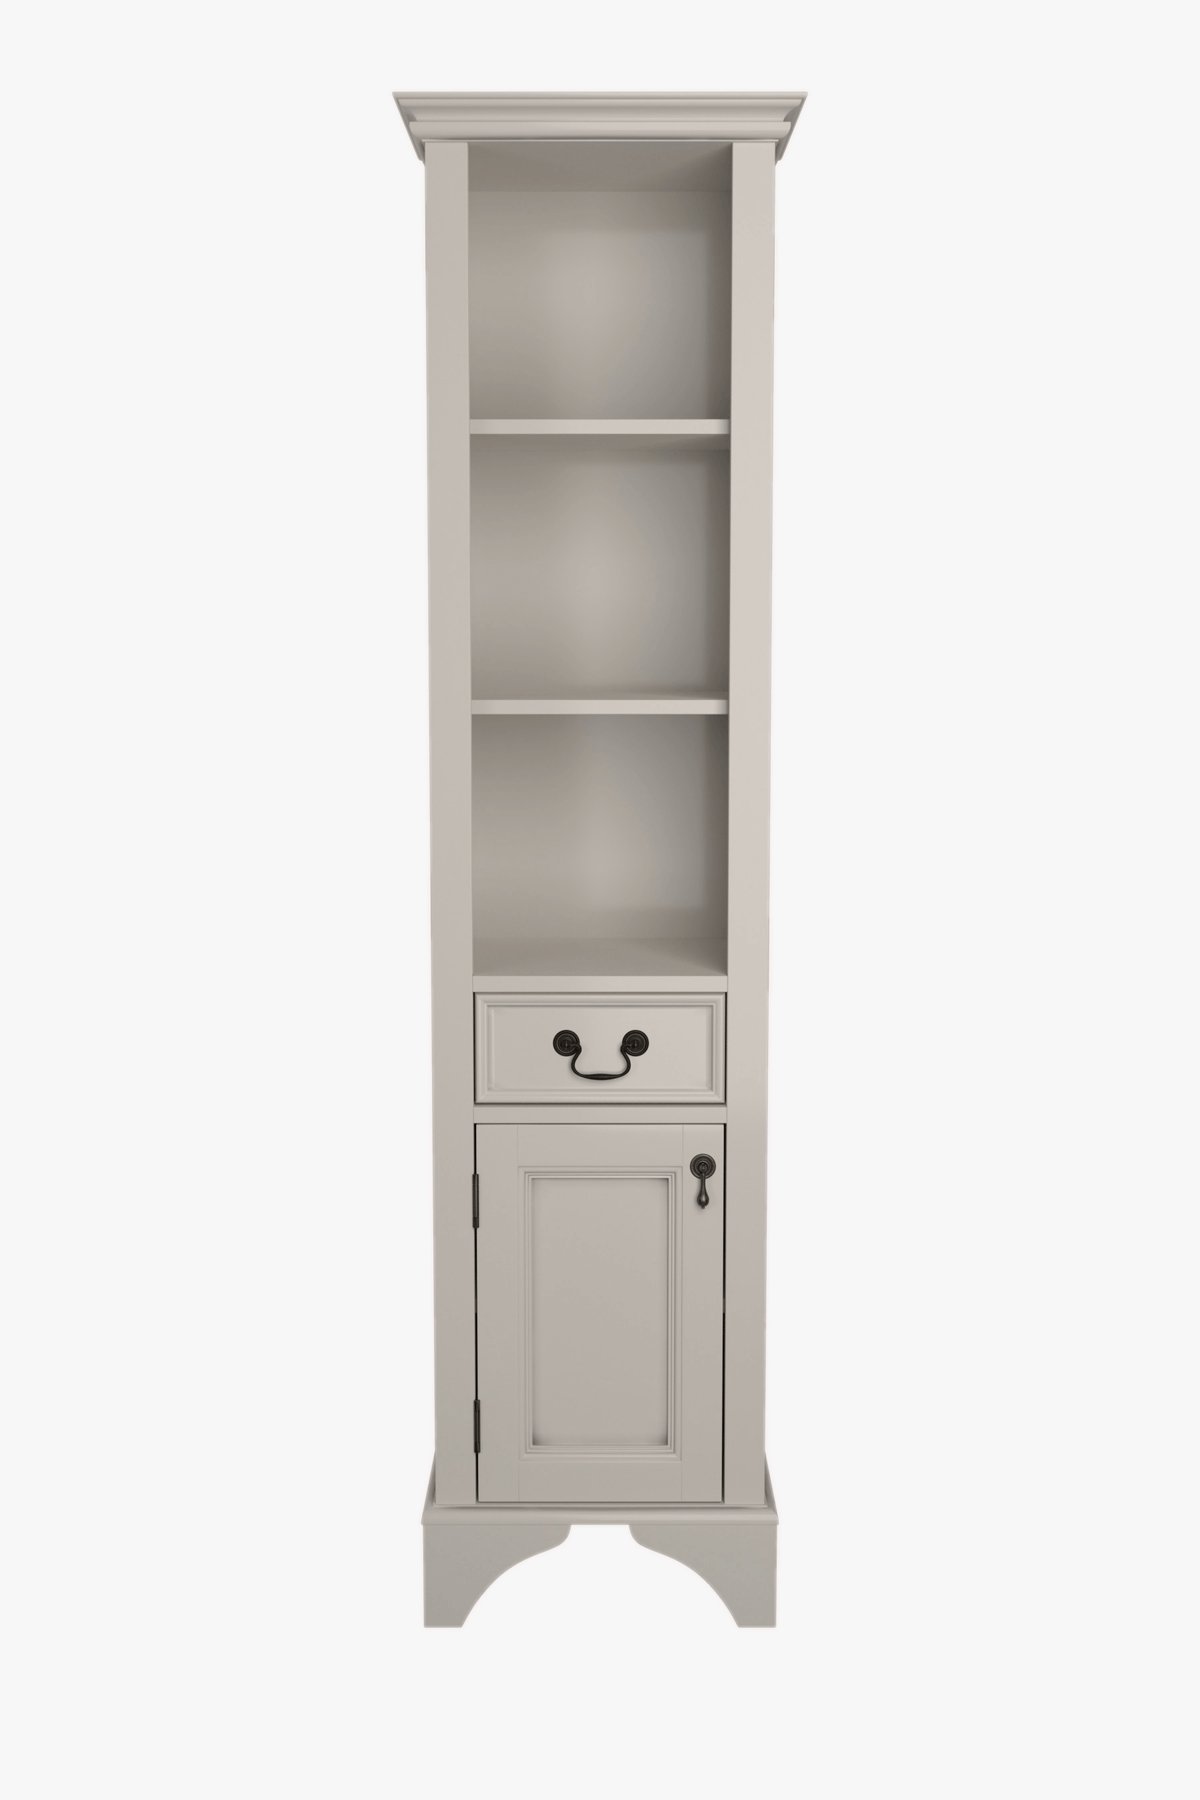 Clifton 1 Door Bathroom Storage Cabinet